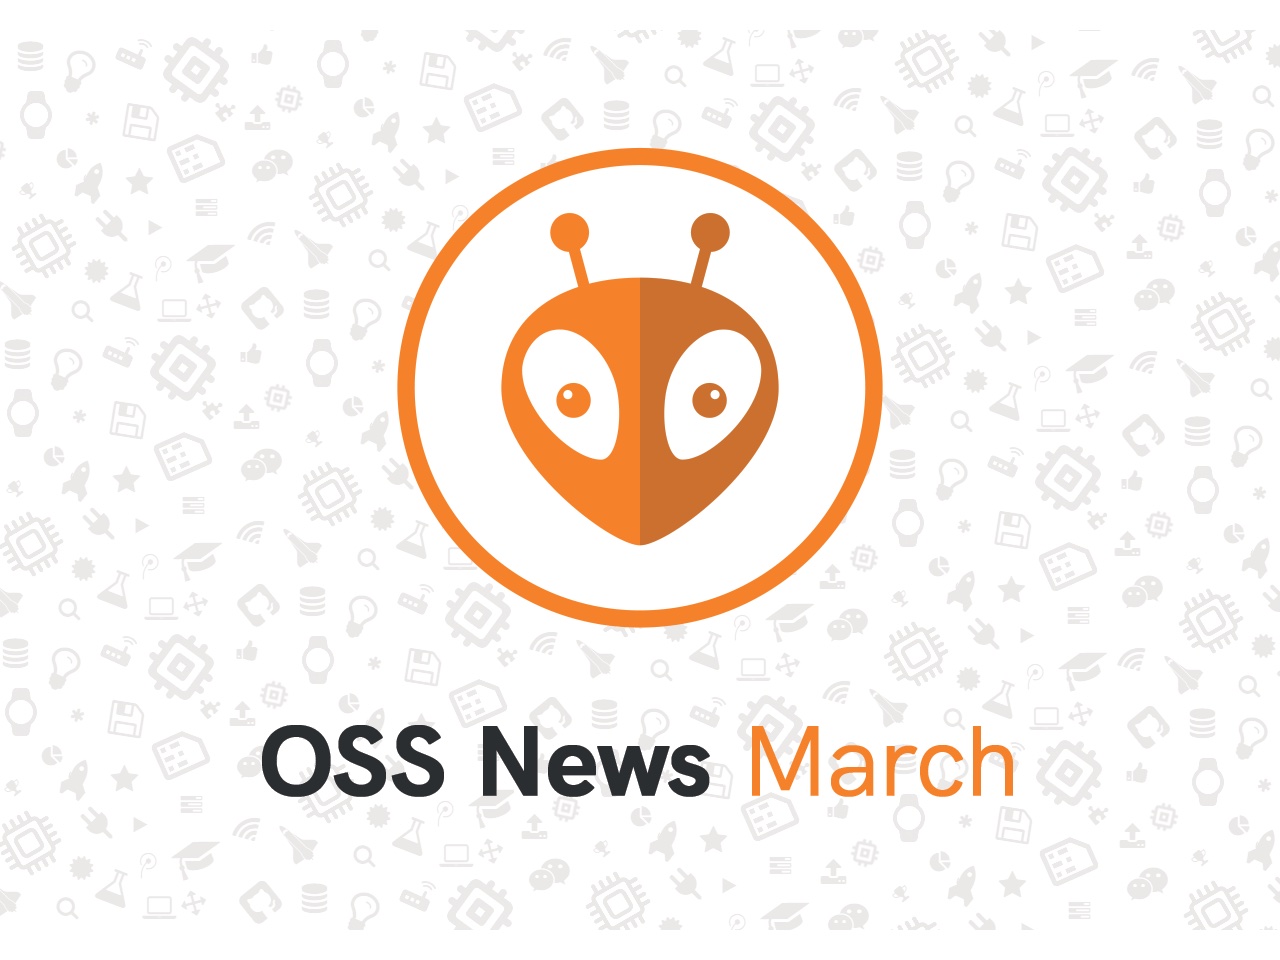 PlatformIO Open Source March Updates